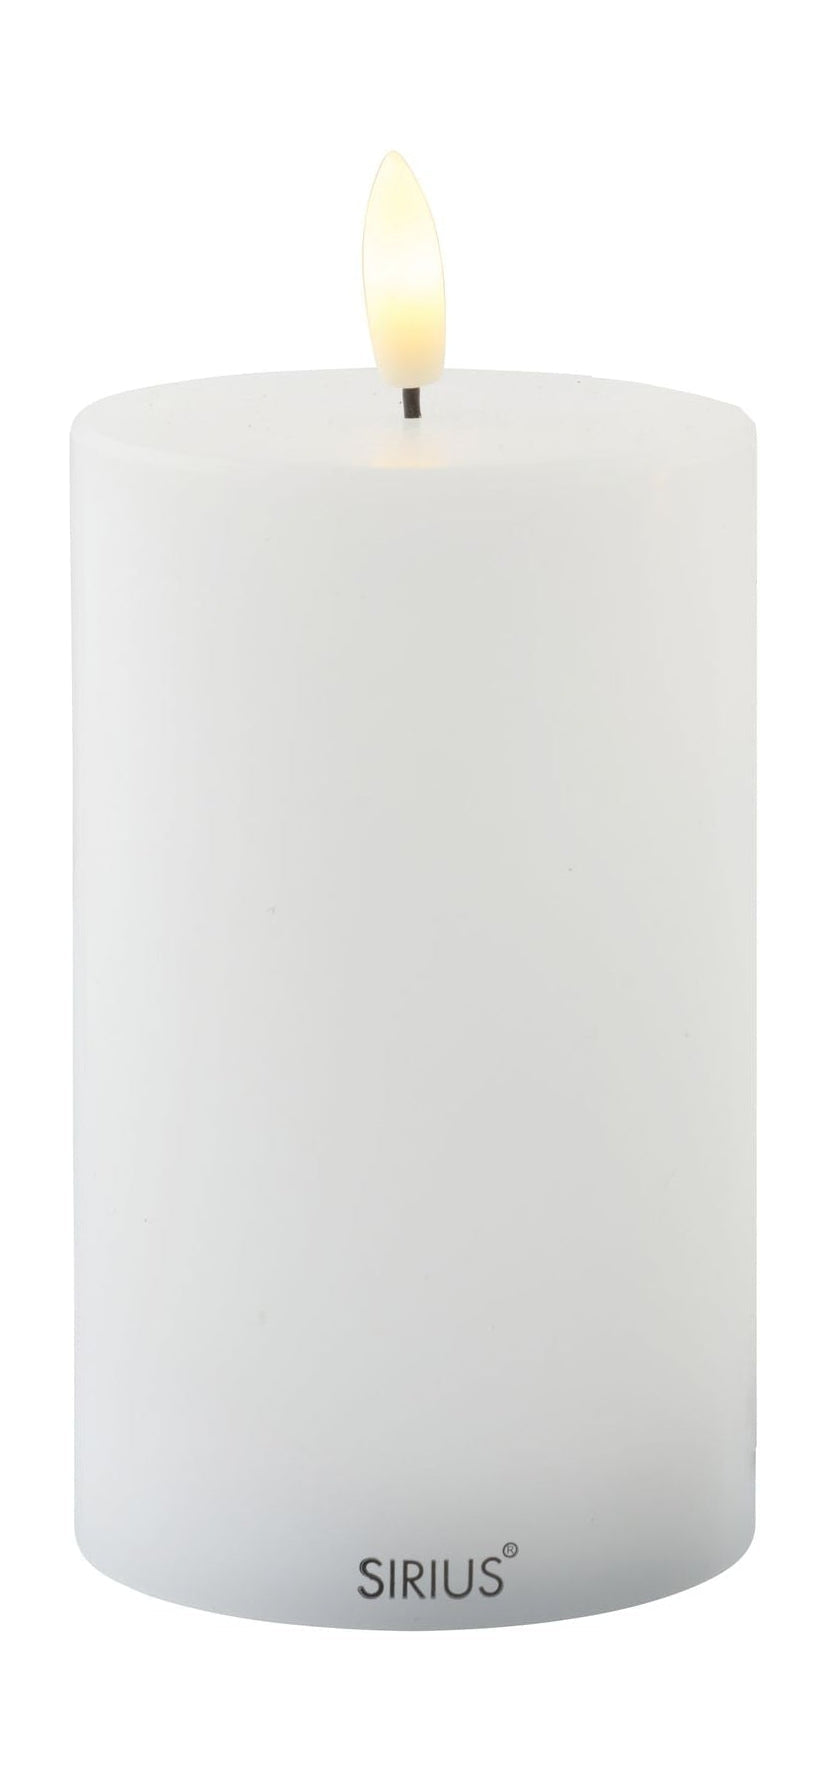 Sirius Sille ladattava LED -kynttilä valkoinen, Ø7,5x H12,5 cm